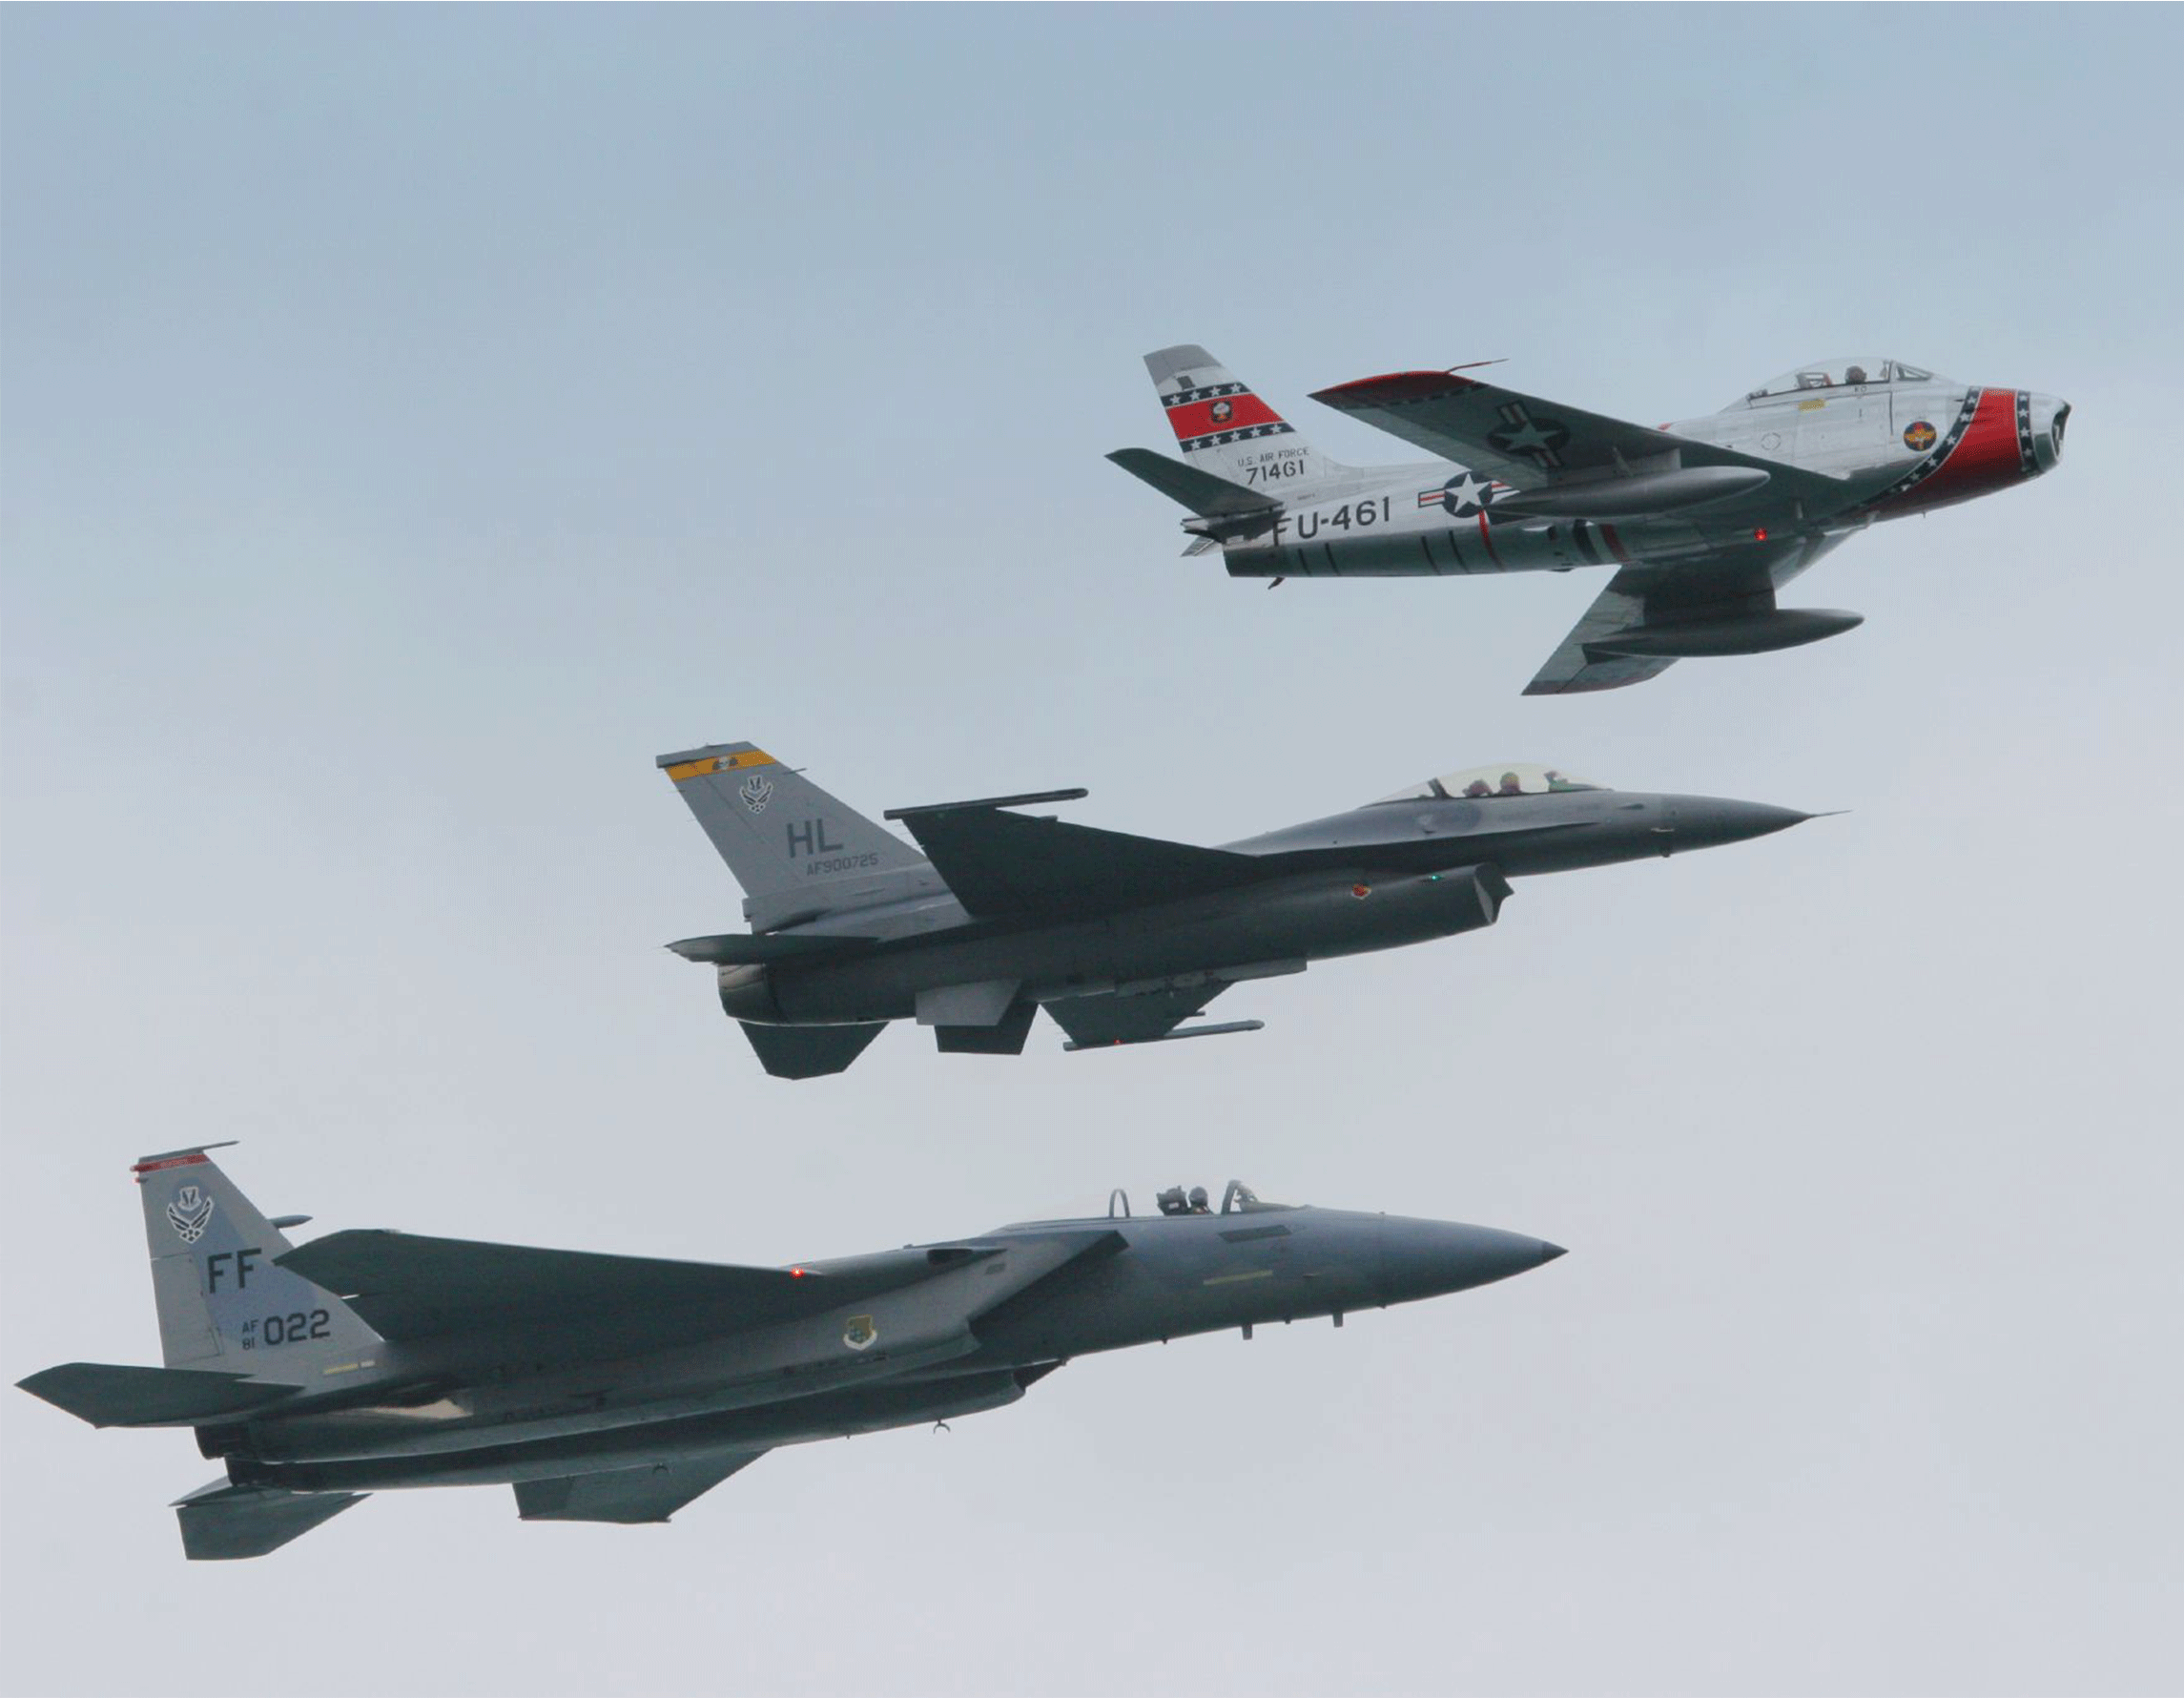 F-15, F-16 and F-86 in flight